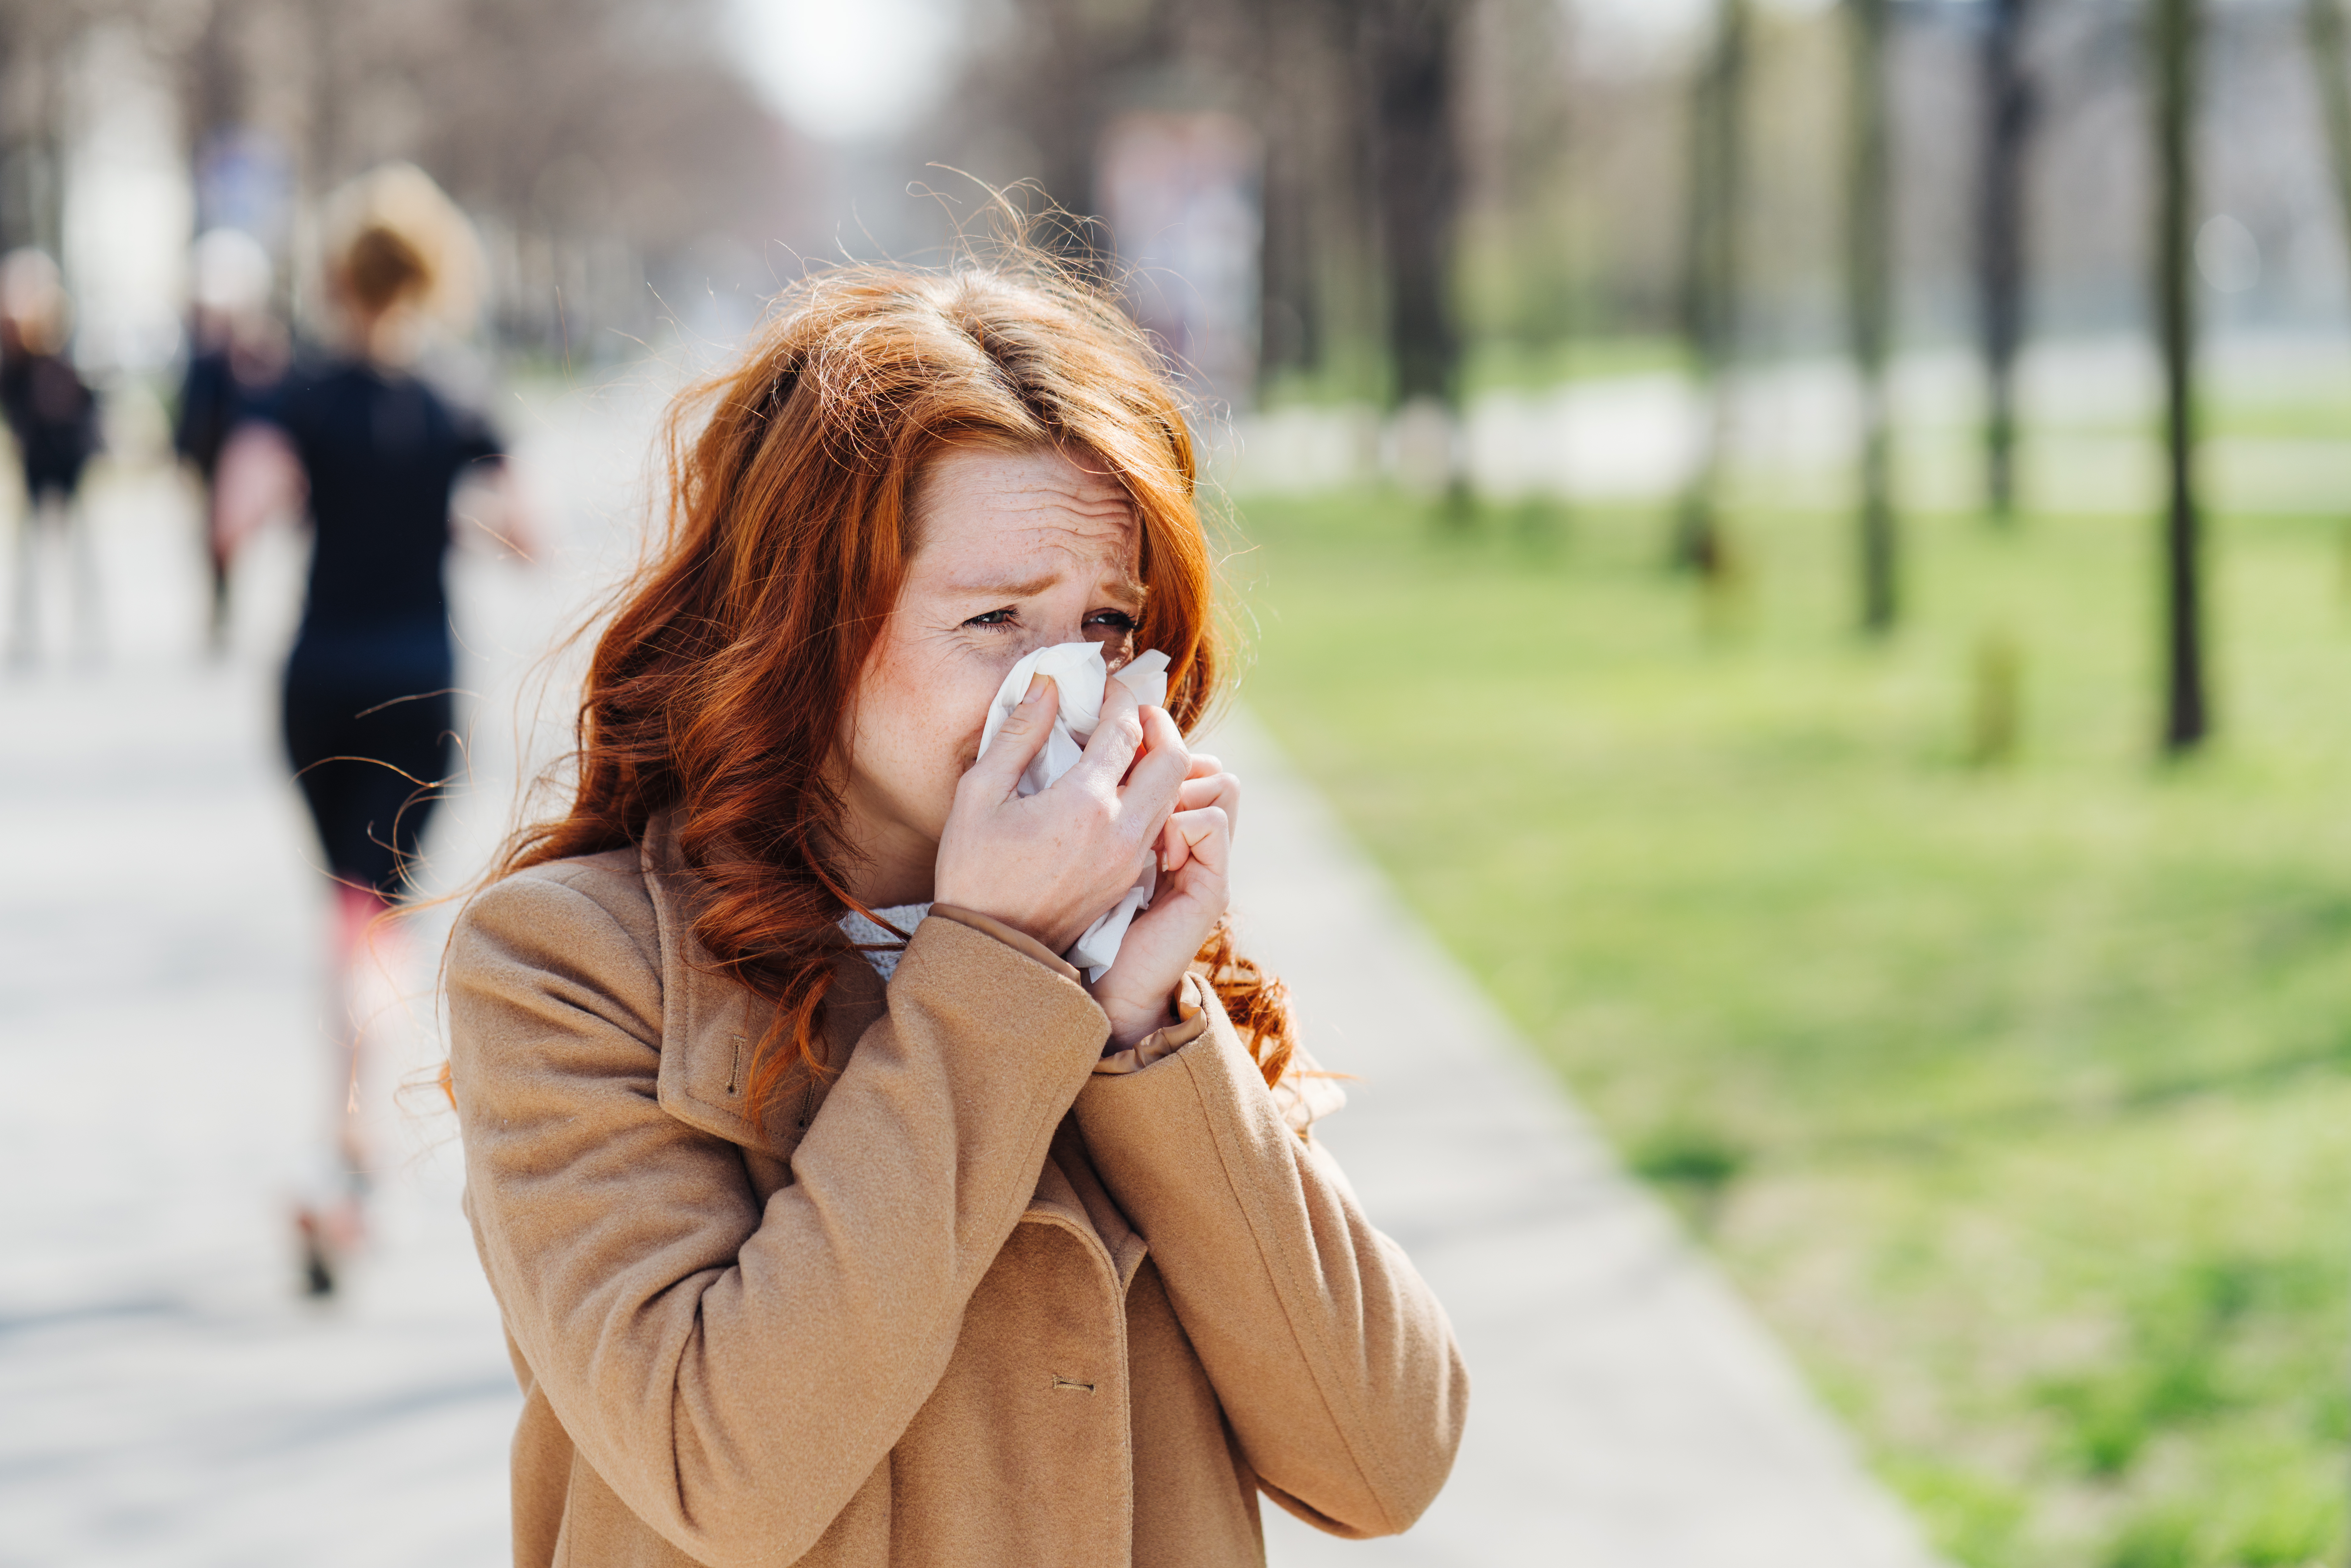 Alergia al polen: causas, síntomas y prevención